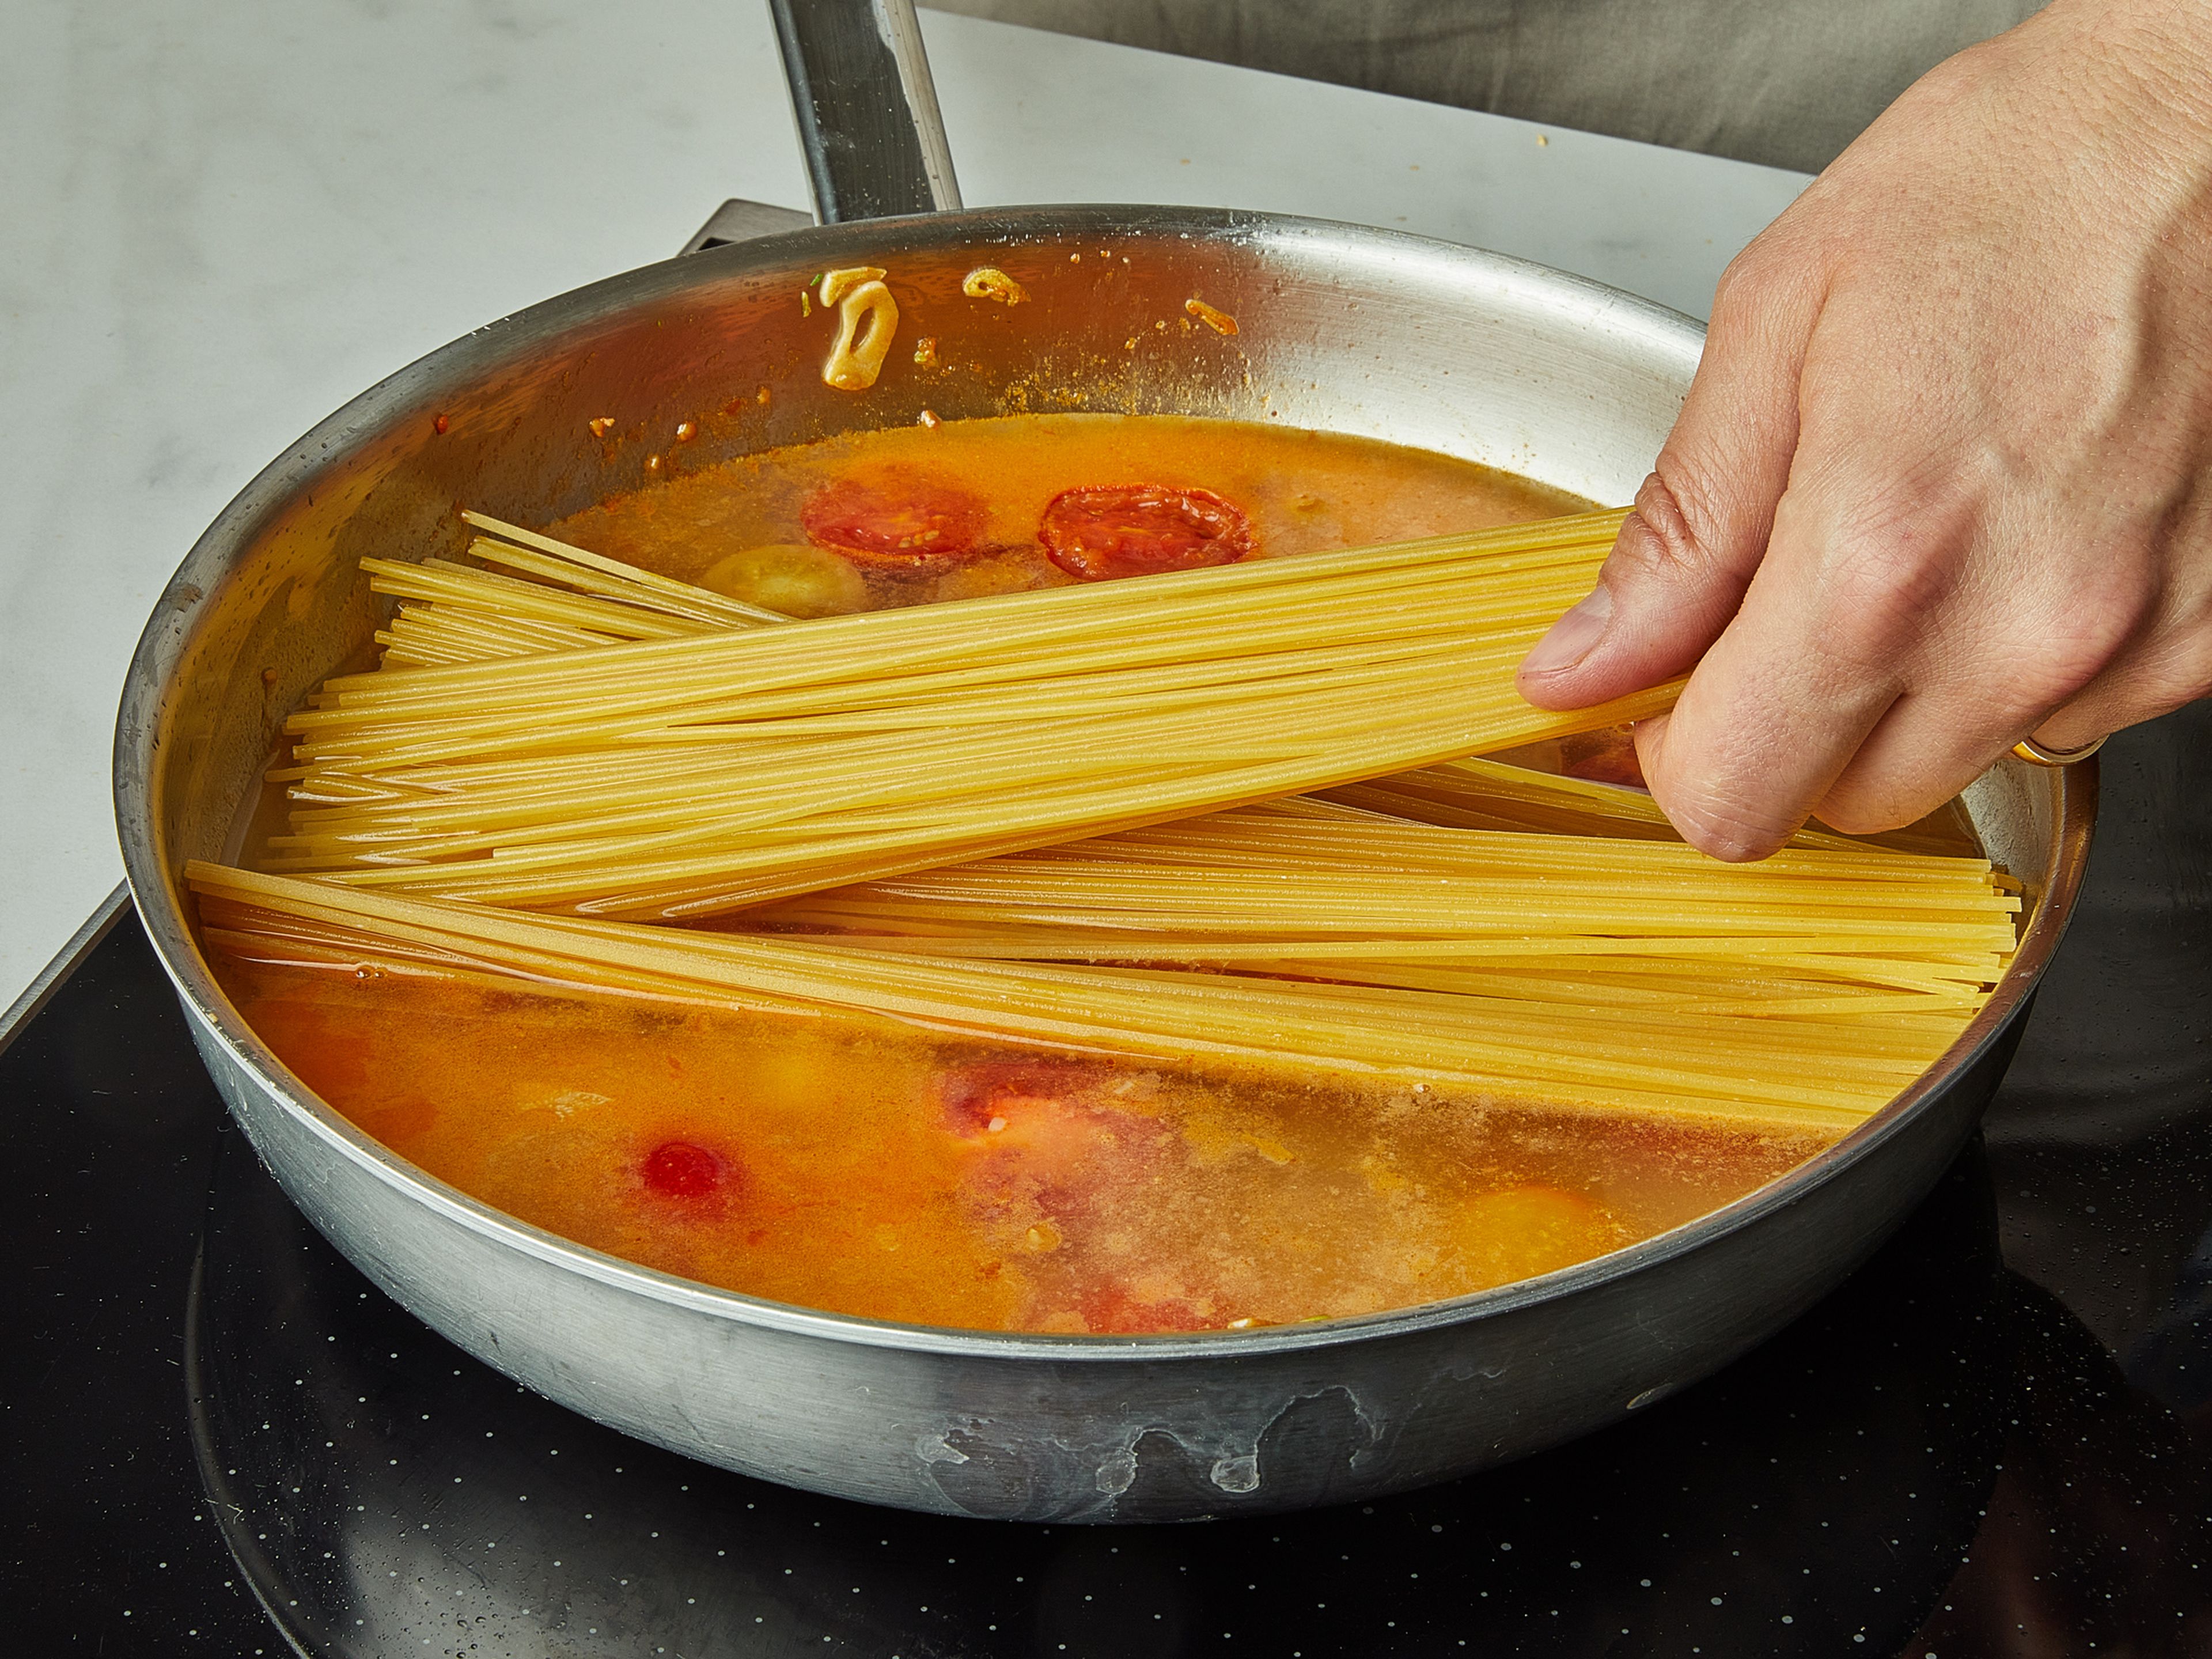 Die Spaghetti auf die Mischung in der Pfanne geben und das Wasser hinzufügen. Die Nudeln sollten vollständig mit Wasser bedeckt sein. Das Wasser mit Salz würzen. Den Deckel aufsetzen und ca. 9 Min. köcheln lassen. Nach ein paar Minuten alles umrühren, damit es nicht zusammenklebt, ggf. mehr Salz hinzufügen.